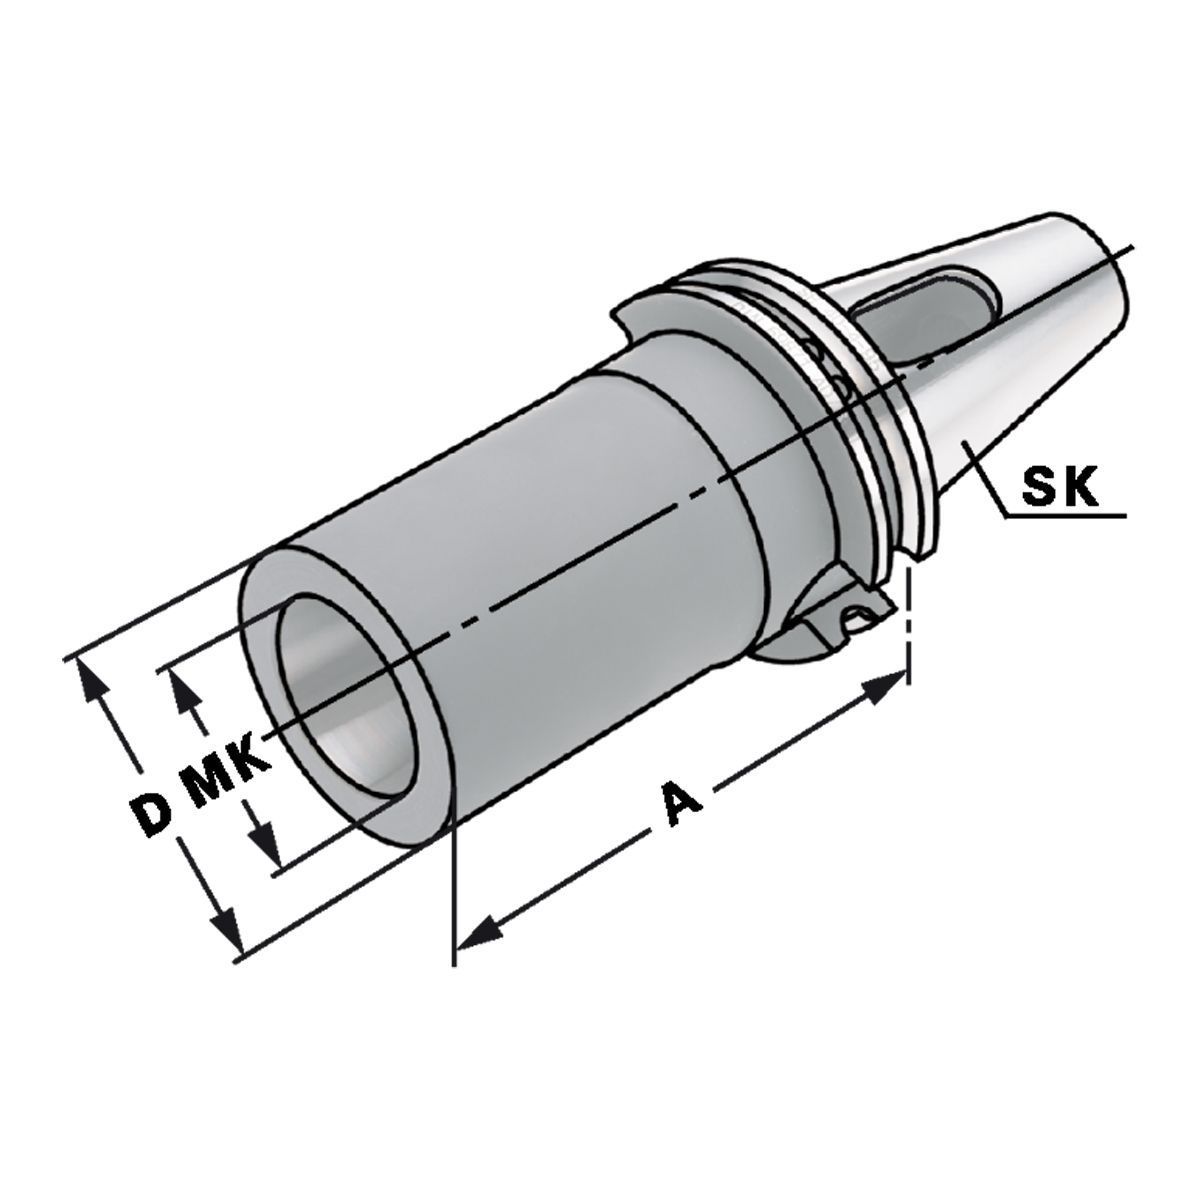 Zwischenhülse SK 40-2-117 für MK mit Austreiblappen DIN 6383